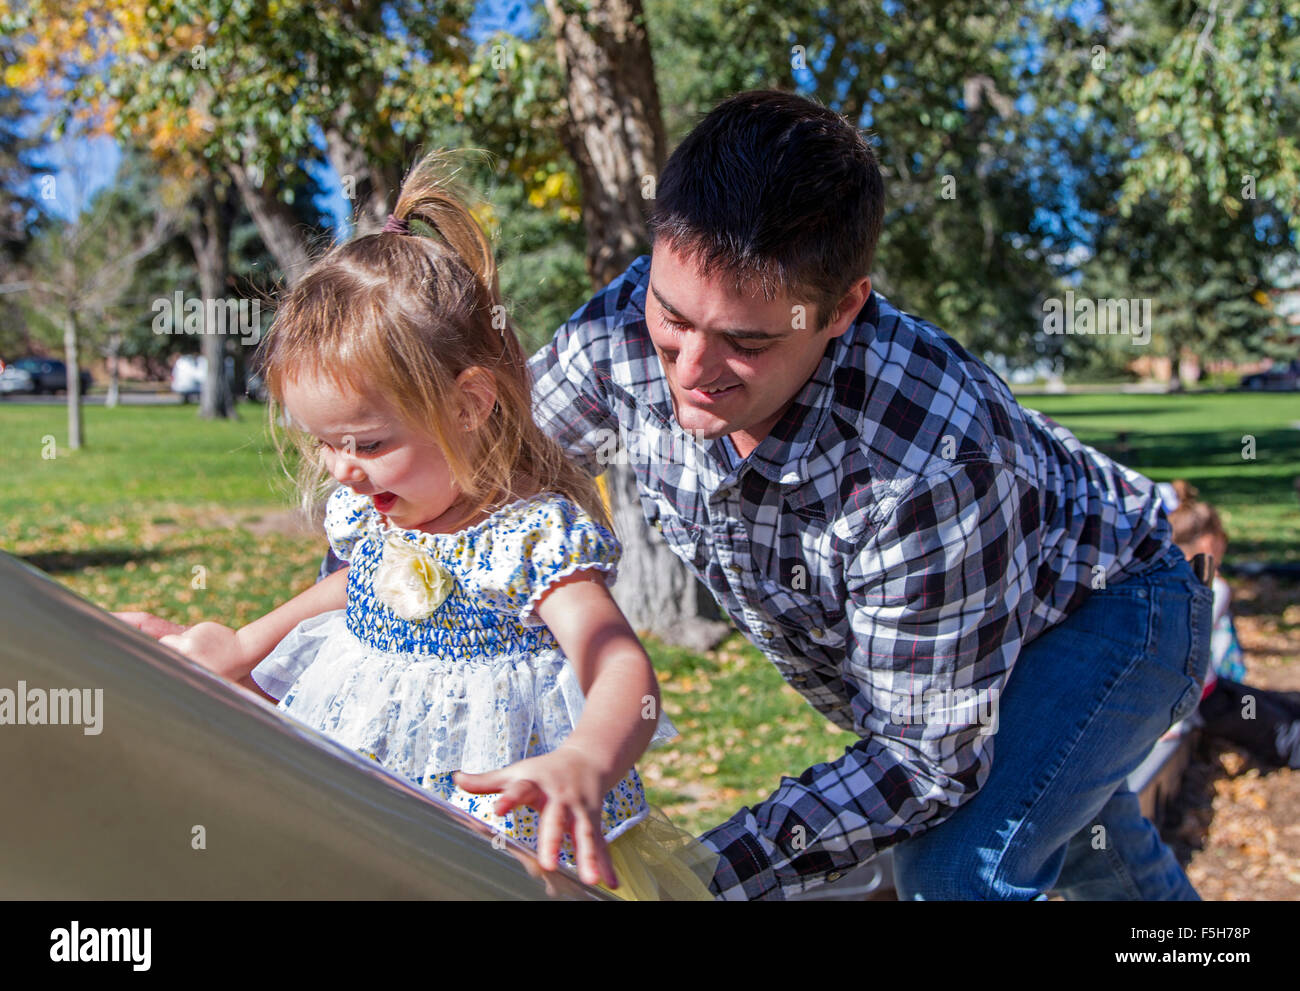 Vater und junge Tochter spielt auf einem verschiebbaren Brett, Park Spielplatz Stockfoto